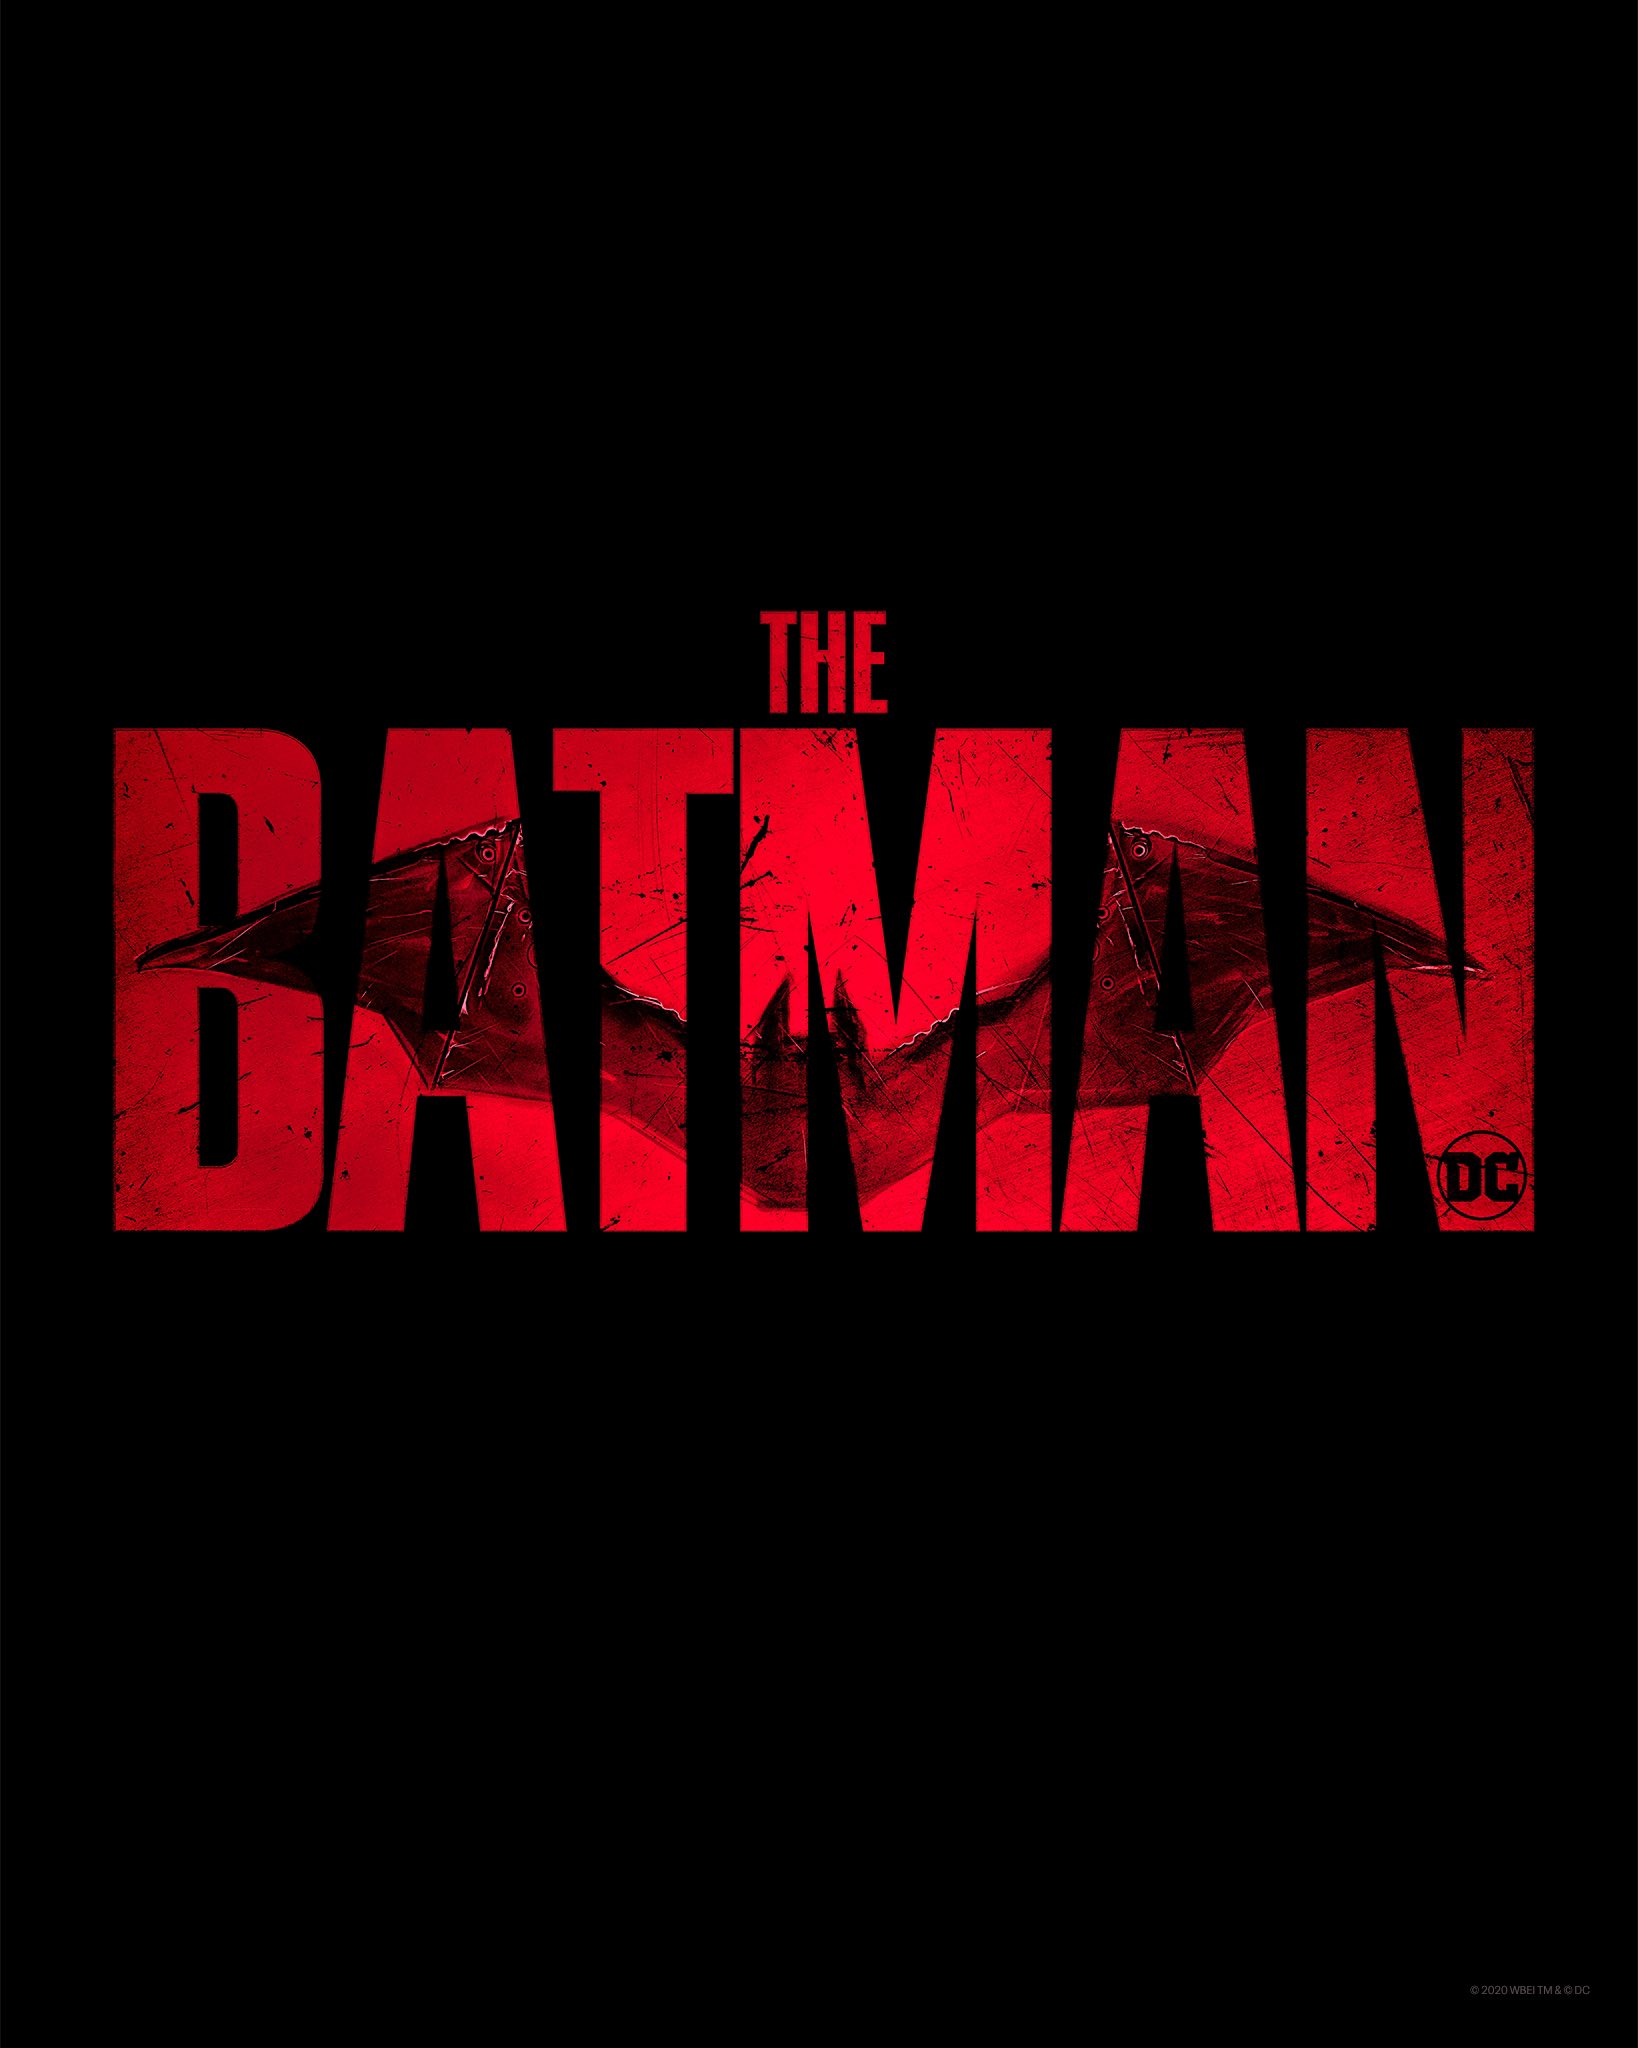 新《蝙蝠侠》首曝海报和Logo 大本版蝙蝠侠回归《闪电侠》